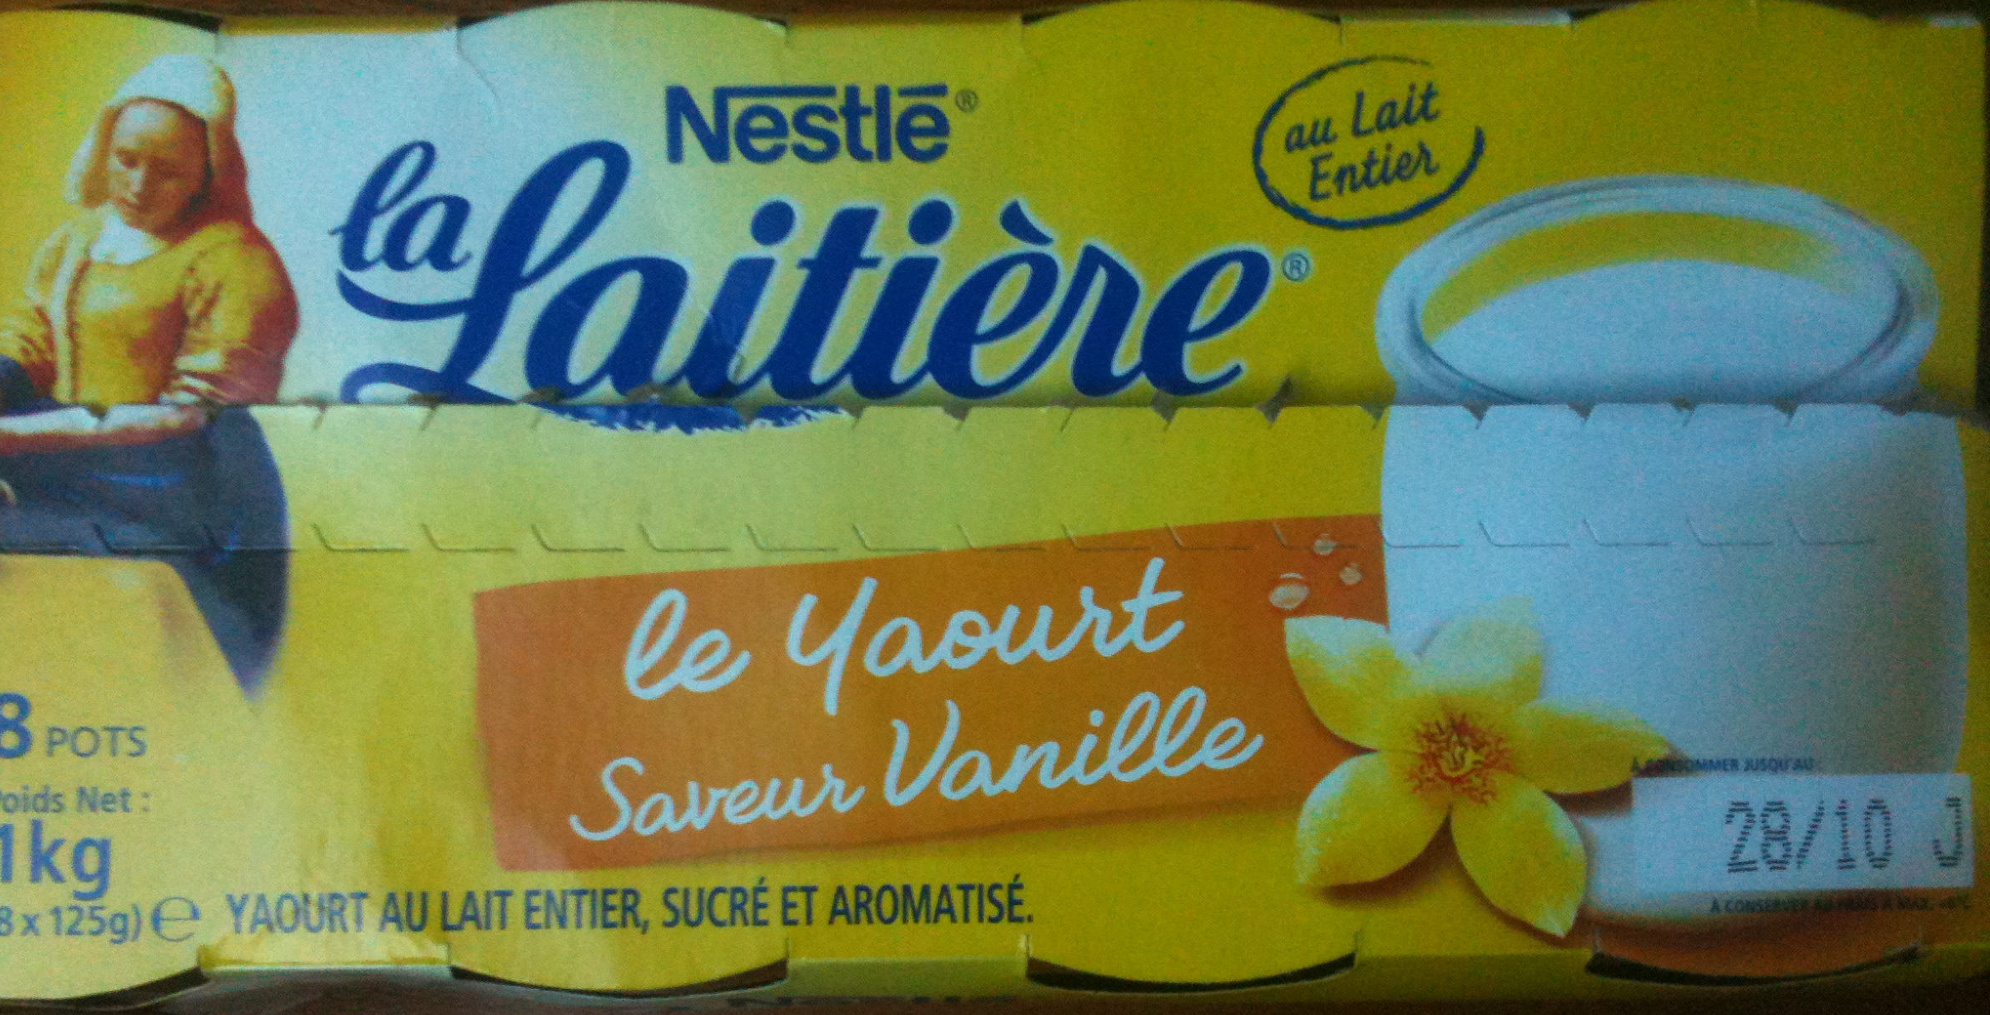 Le Yaourt, Saveur Vanille (8 Pots) - Product - fr